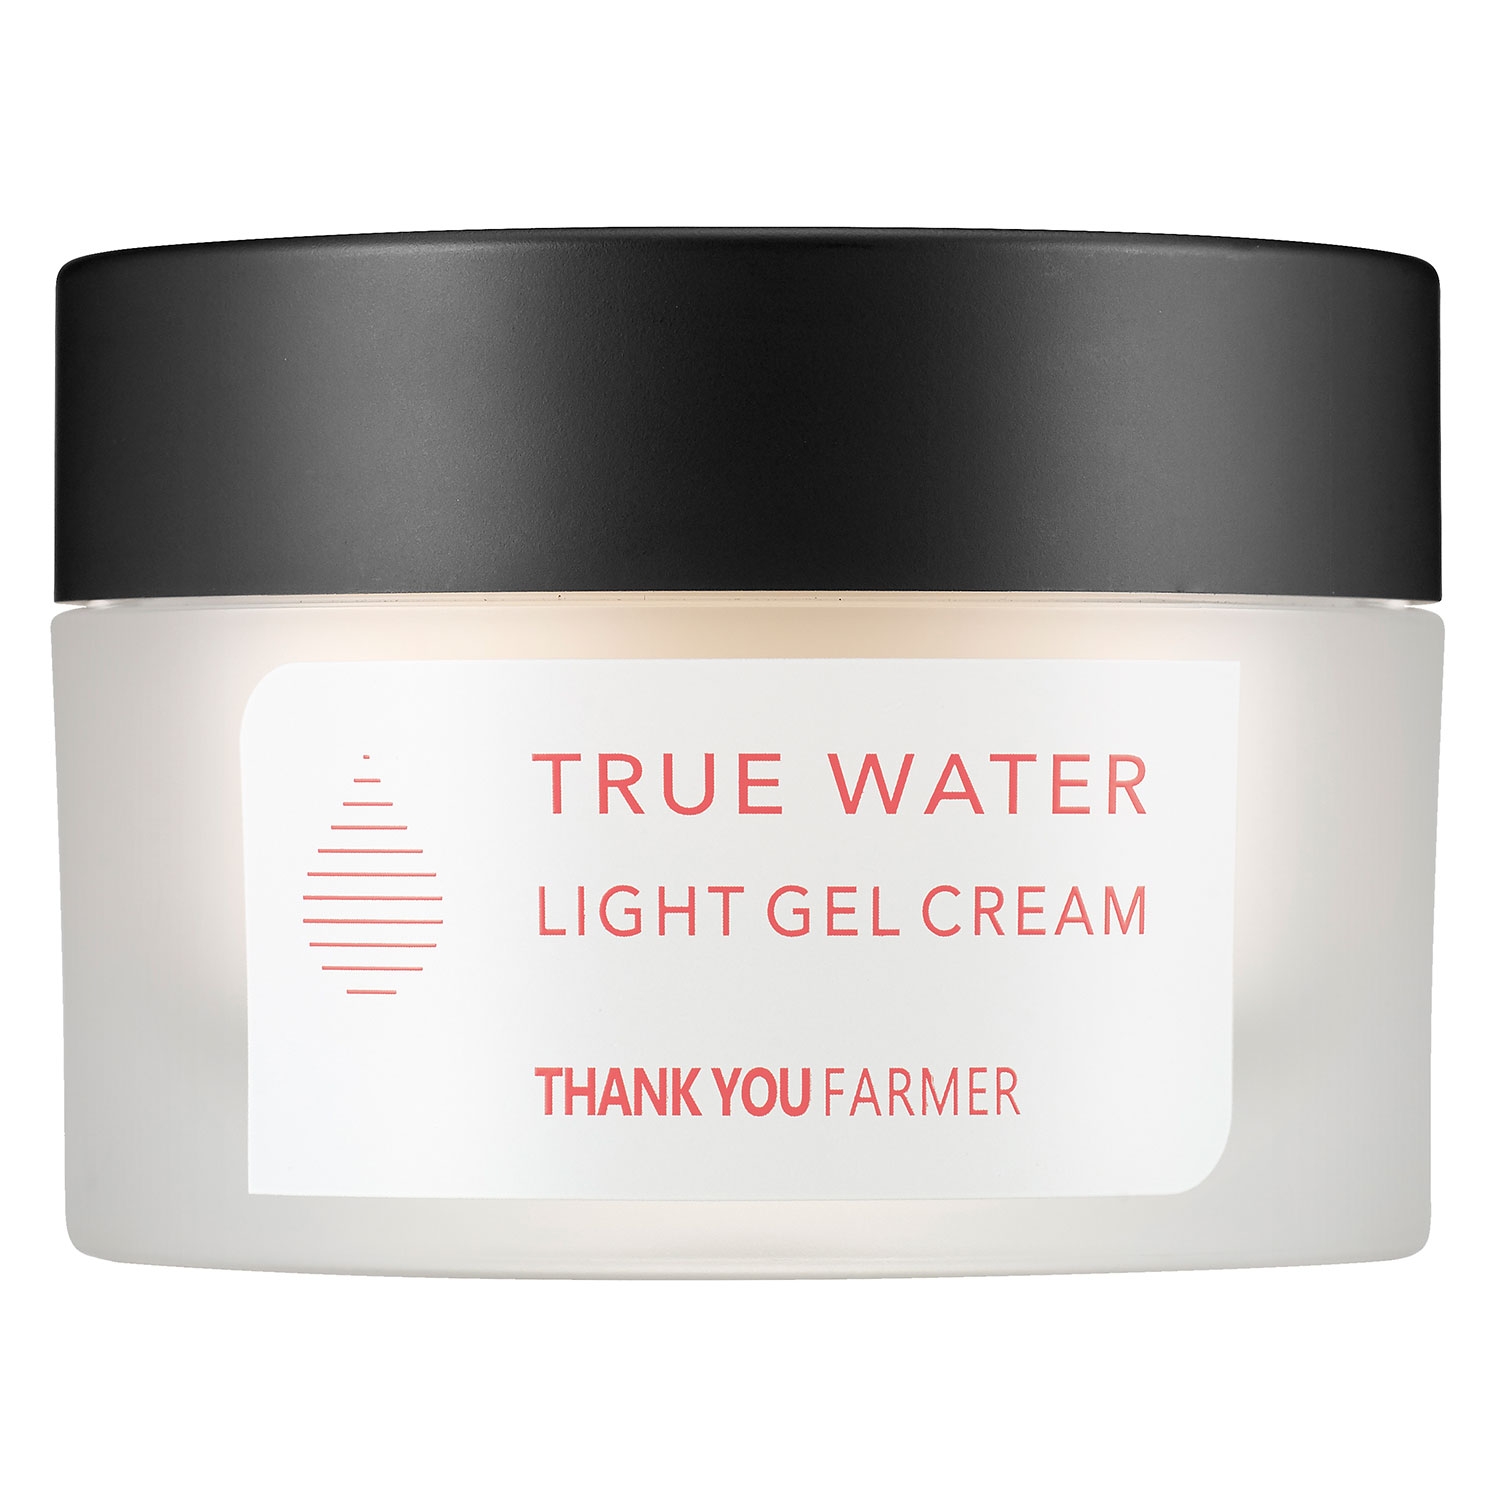 Produktbild von THANK YOU FARMER - True Water Light Gel Cream